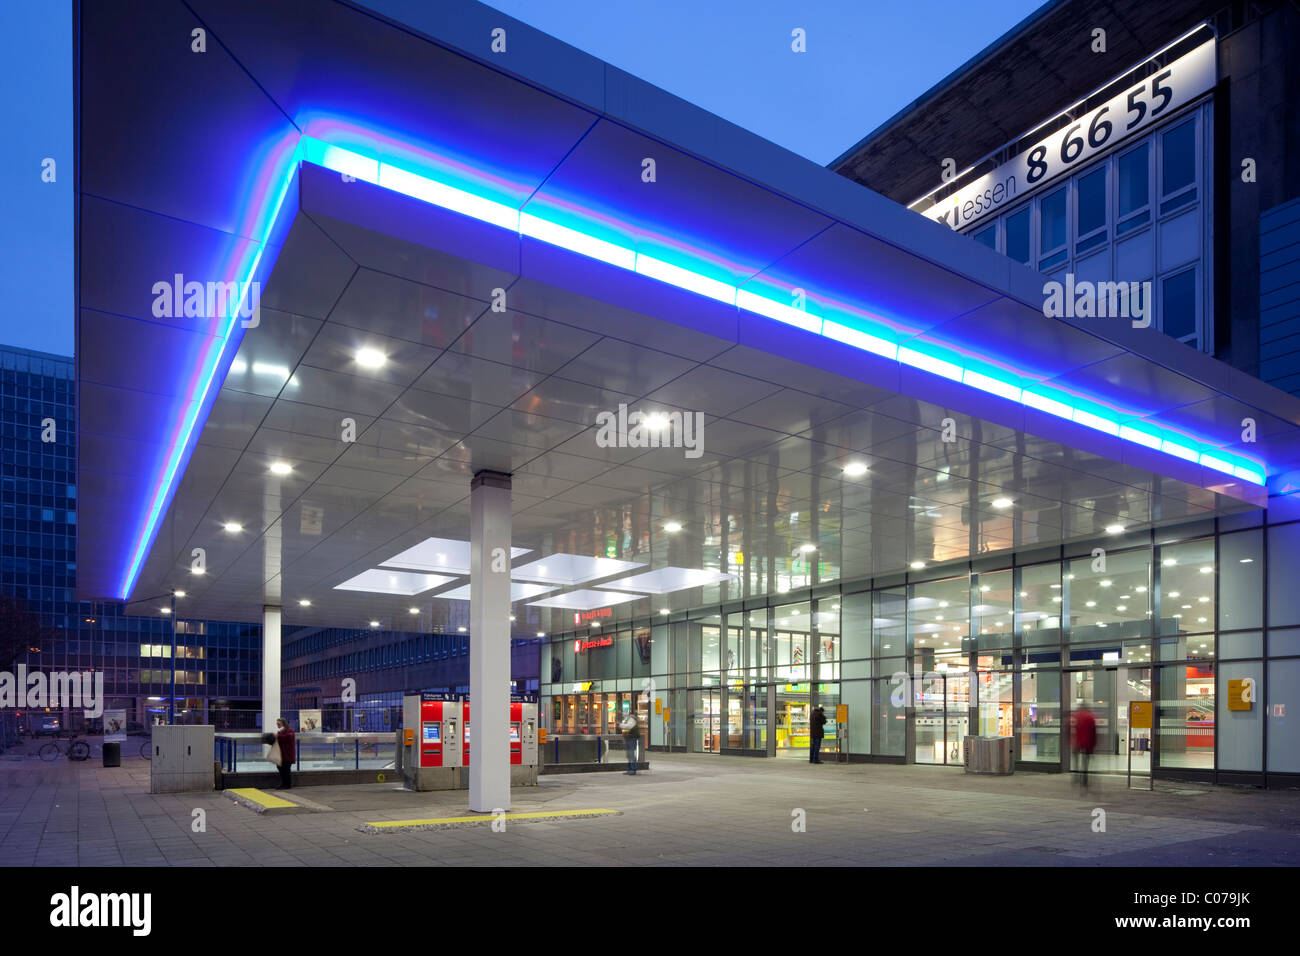 La gare centrale, Essen, région de la Ruhr, Nordrhein-Westfalen, Germany, Europe Banque D'Images